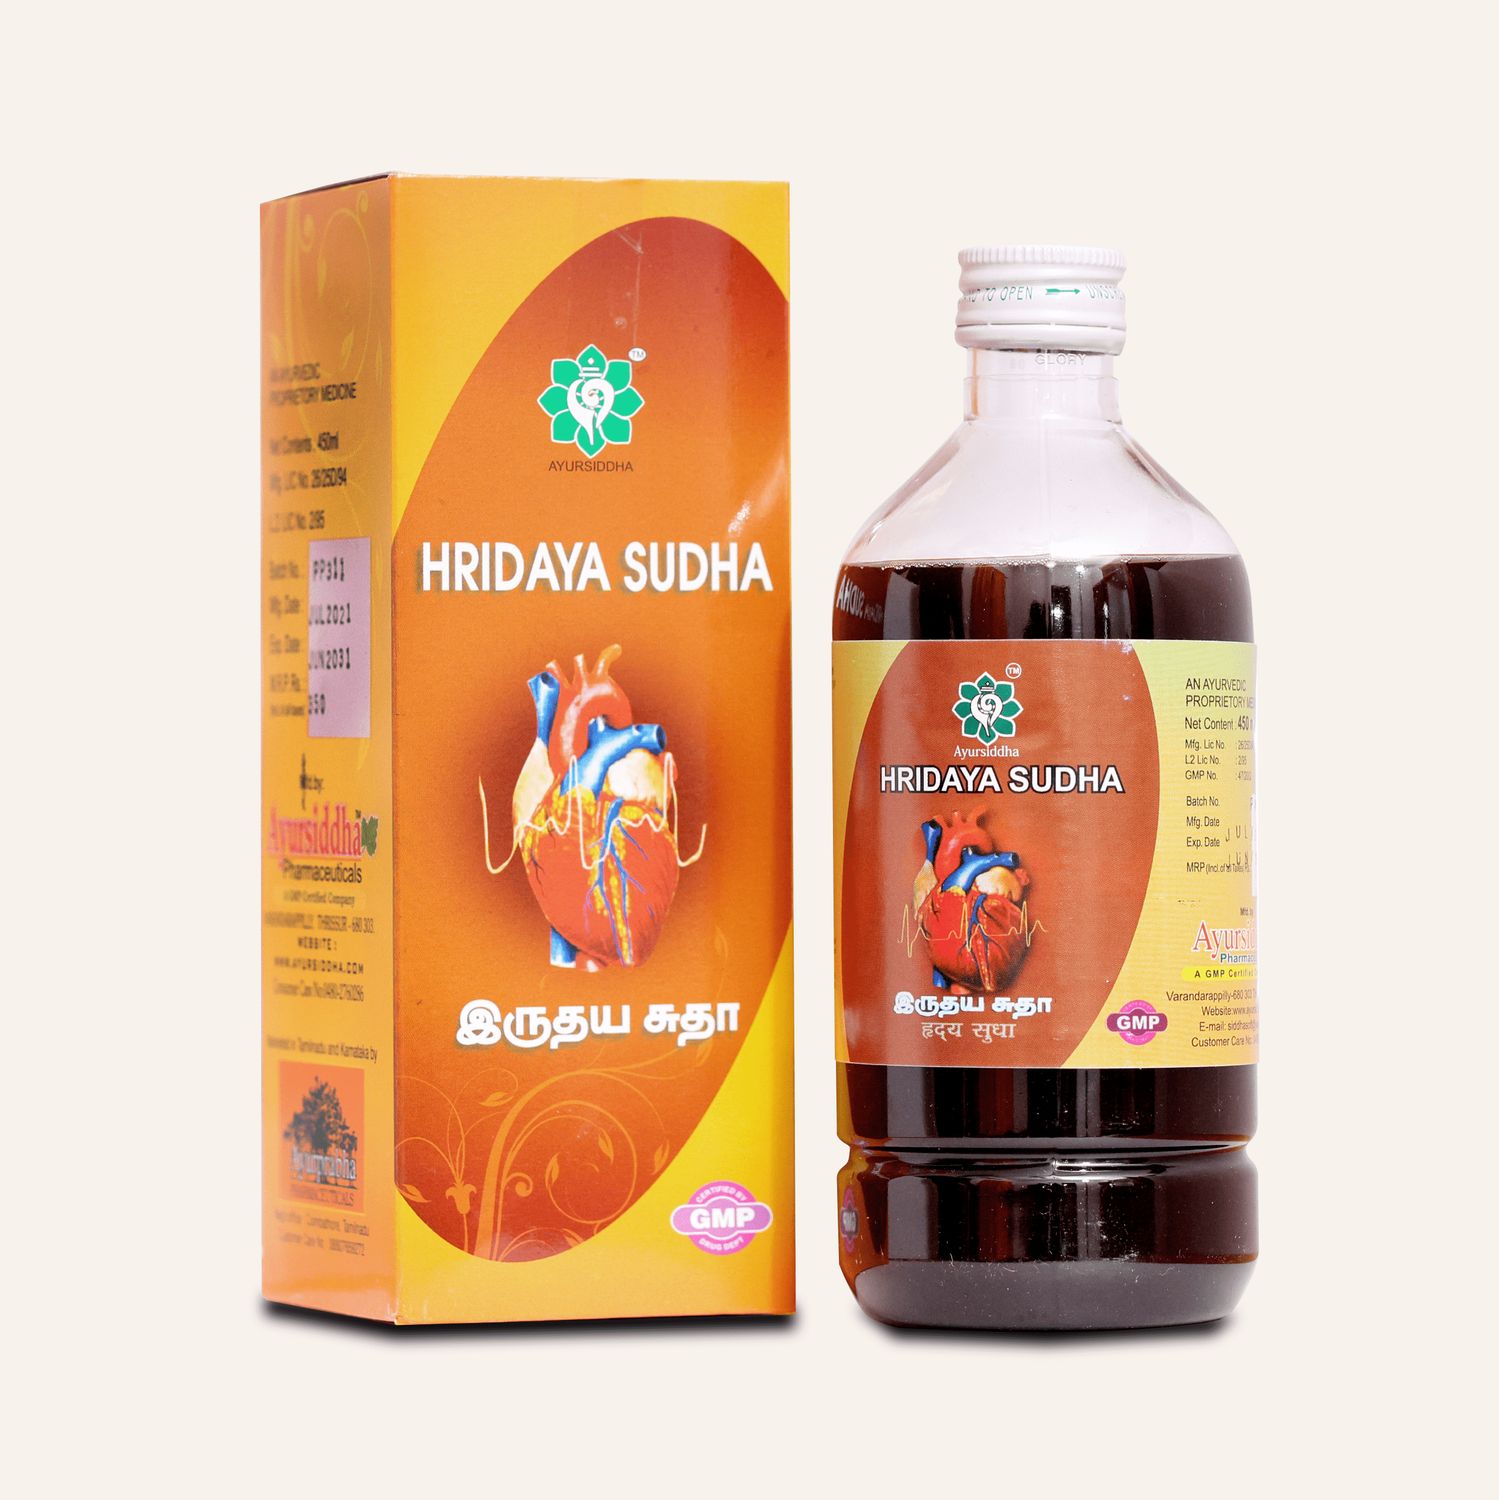 Hridaya Sudha - Heart Care Liquid 450ml by AyurSiddha AyurPrabha